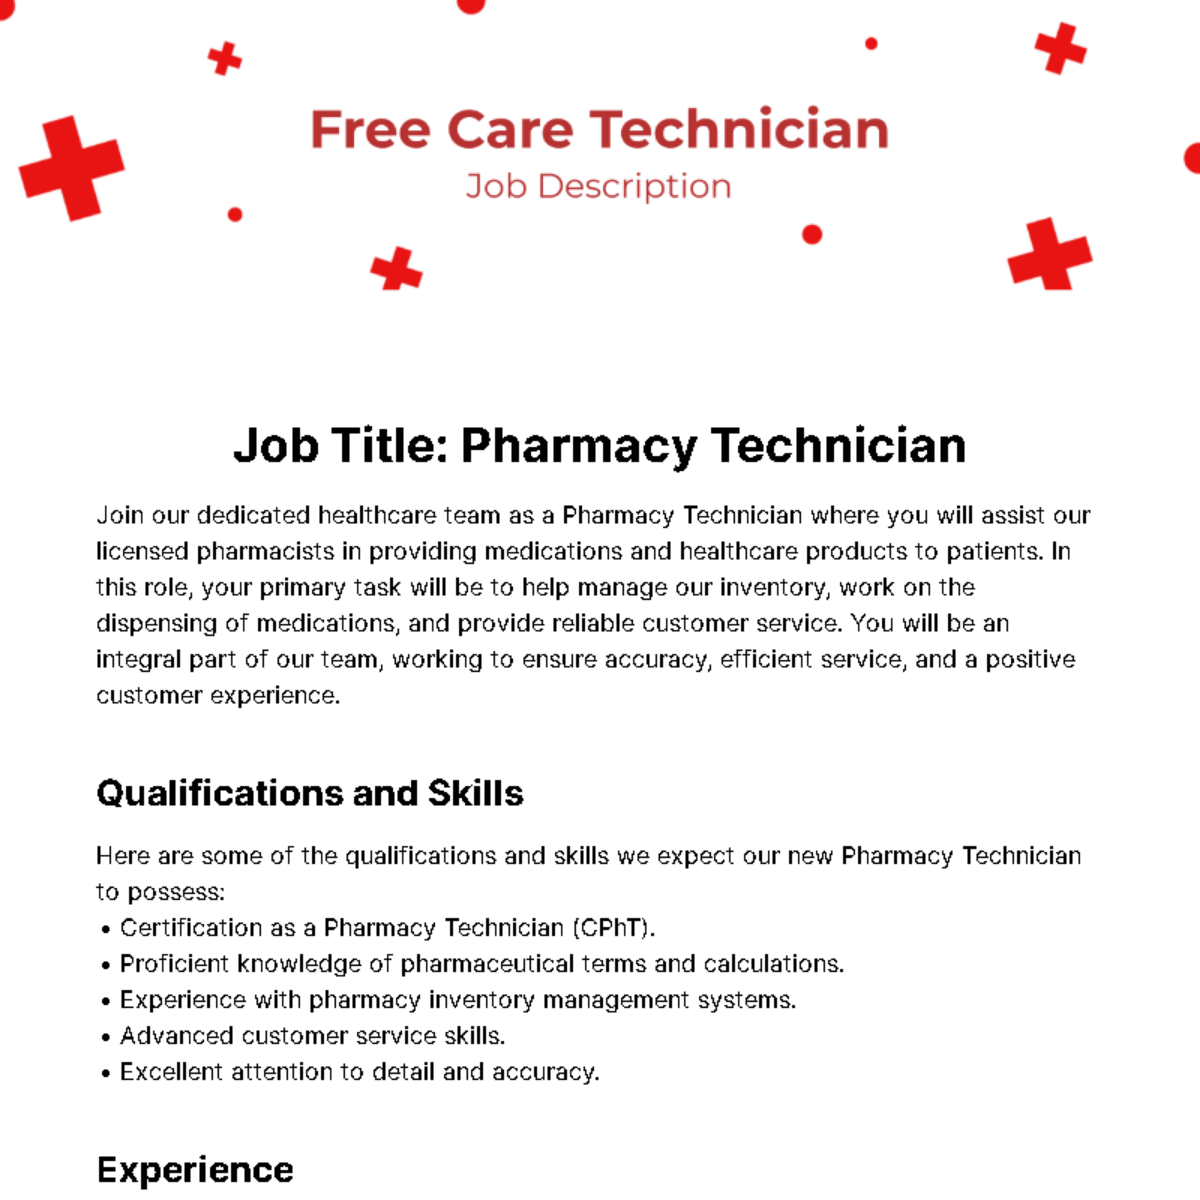 Free Care Technician Job Description Template